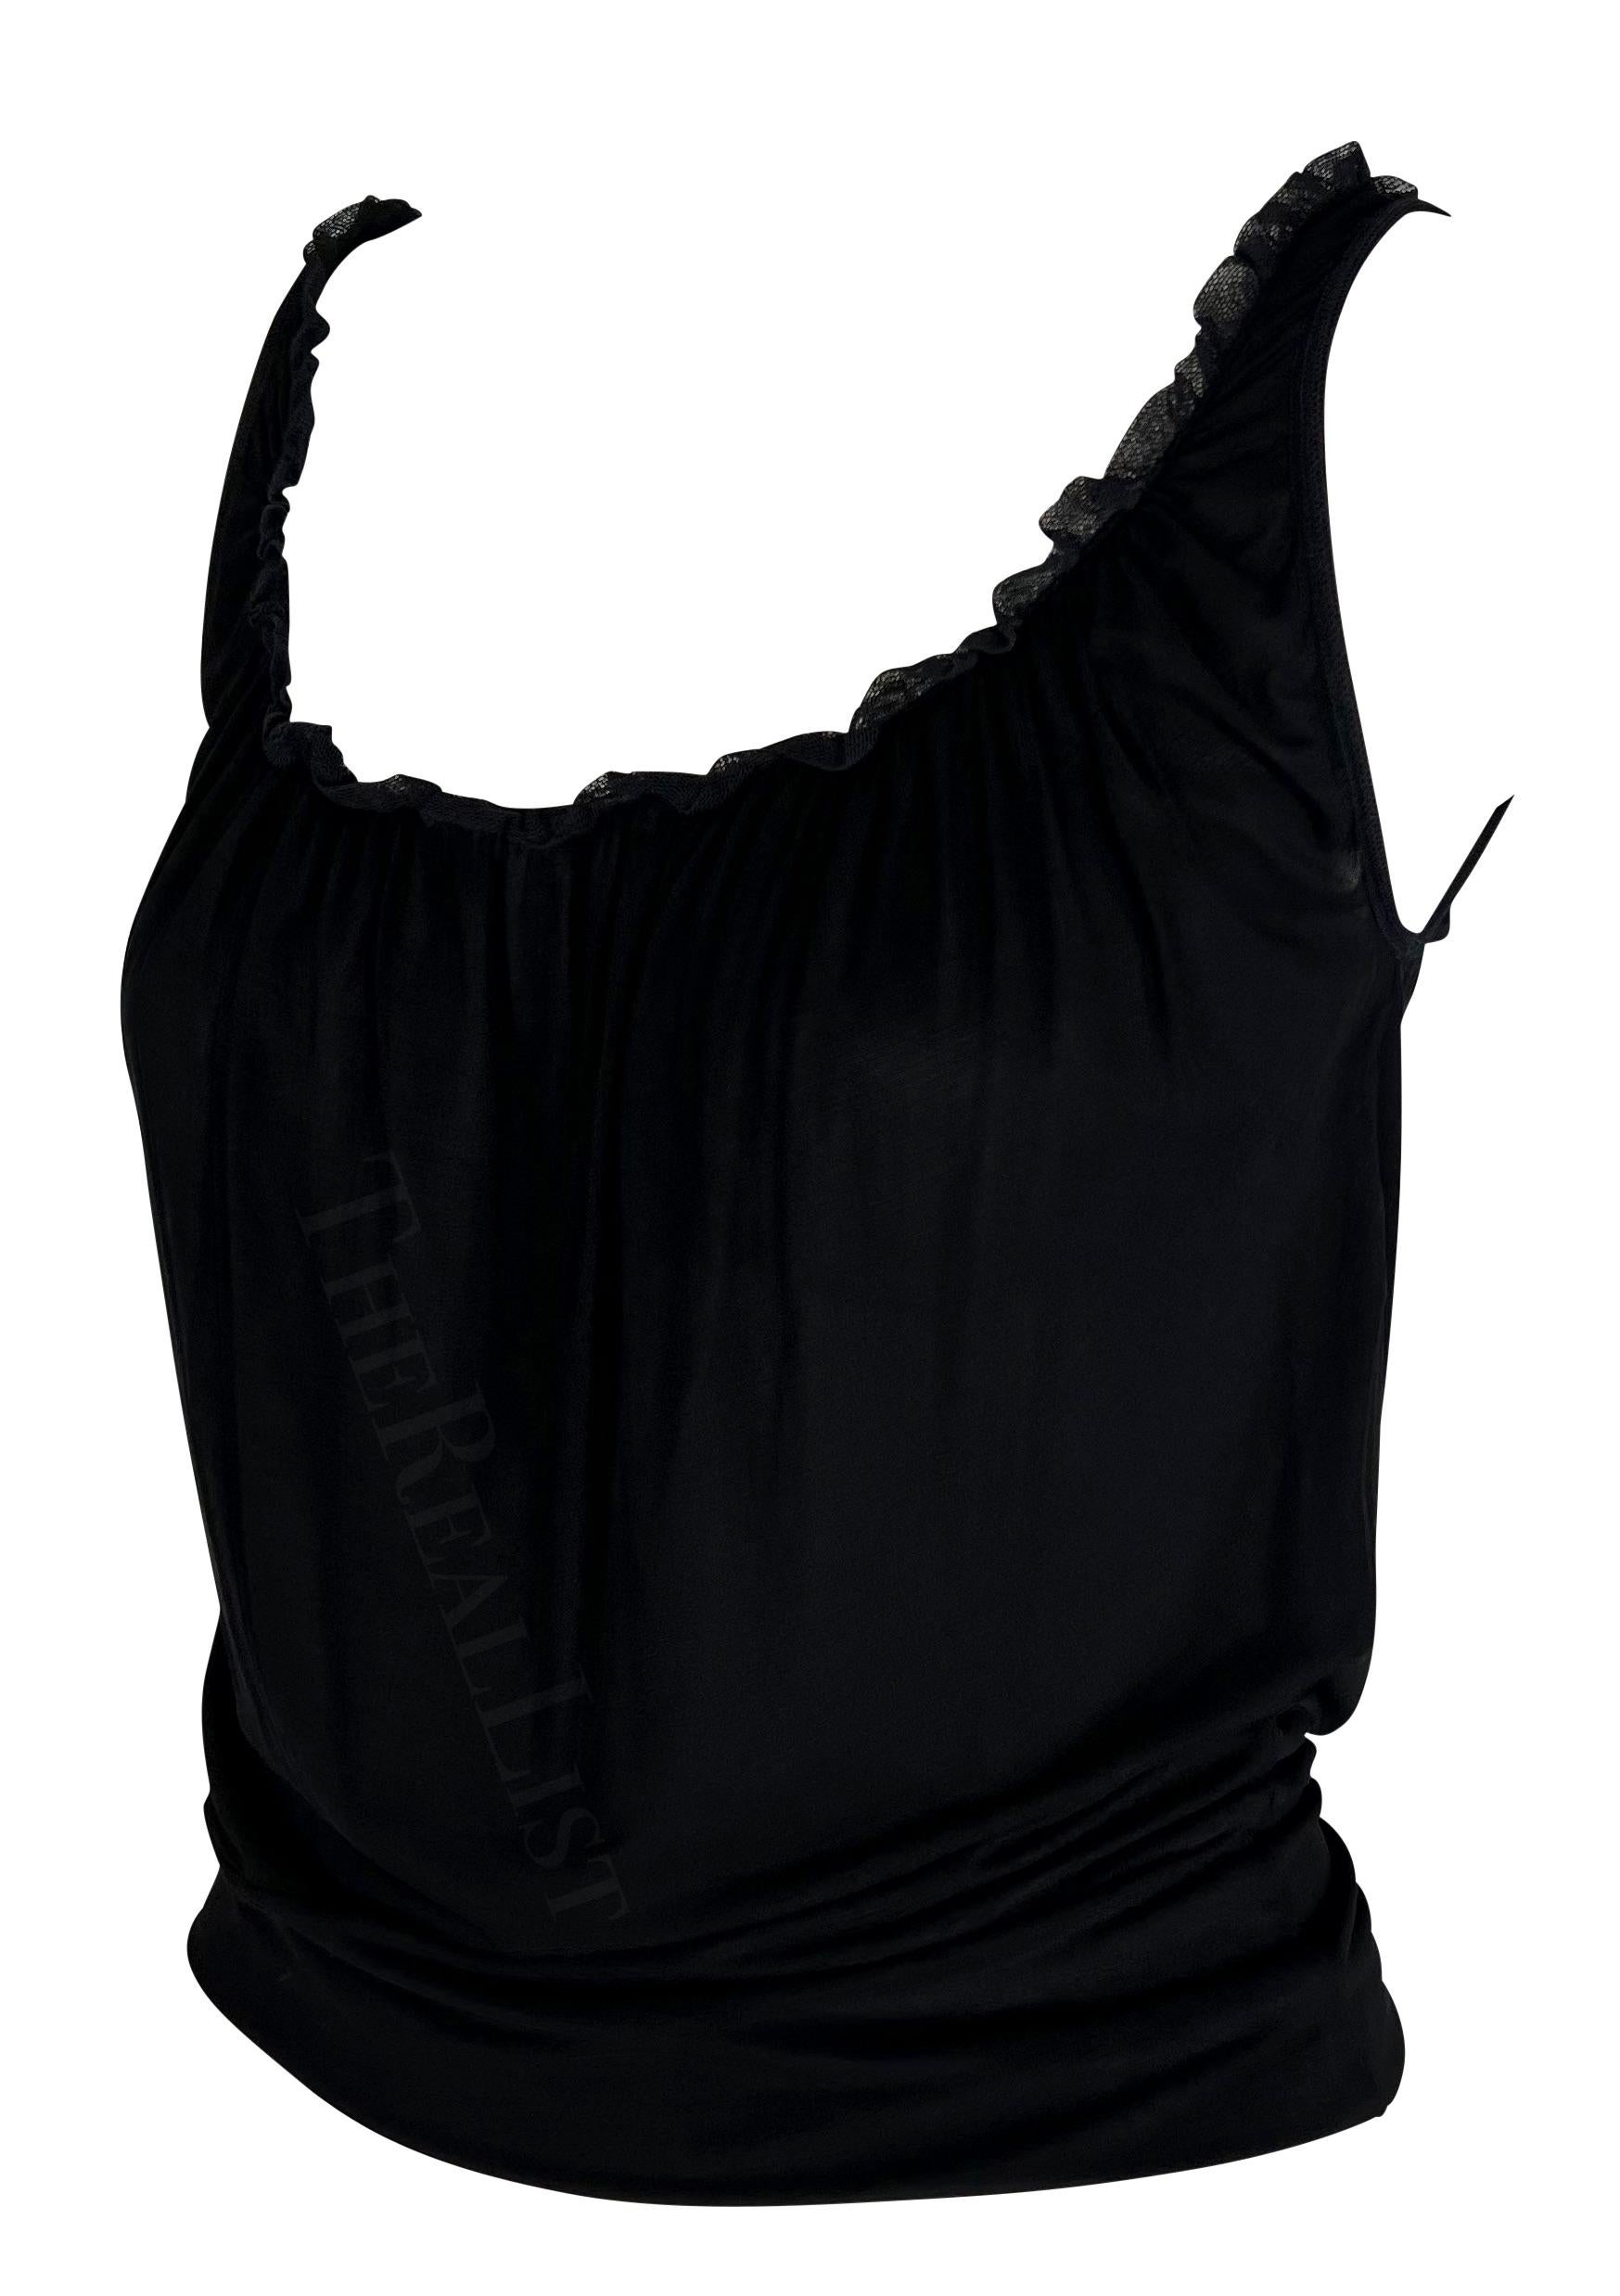 TheRealList präsentiert: ein fabelhaftes schwarzes Gucci-Rüschentop, entworfen von Tom Ford. Dieses schicke schwarze Tank-Top aus den frühen 2000er Jahren hat einen weiten Rundhalsausschnitt, der mit einem kurzen Rüschenbesatz akzentuiert ist.